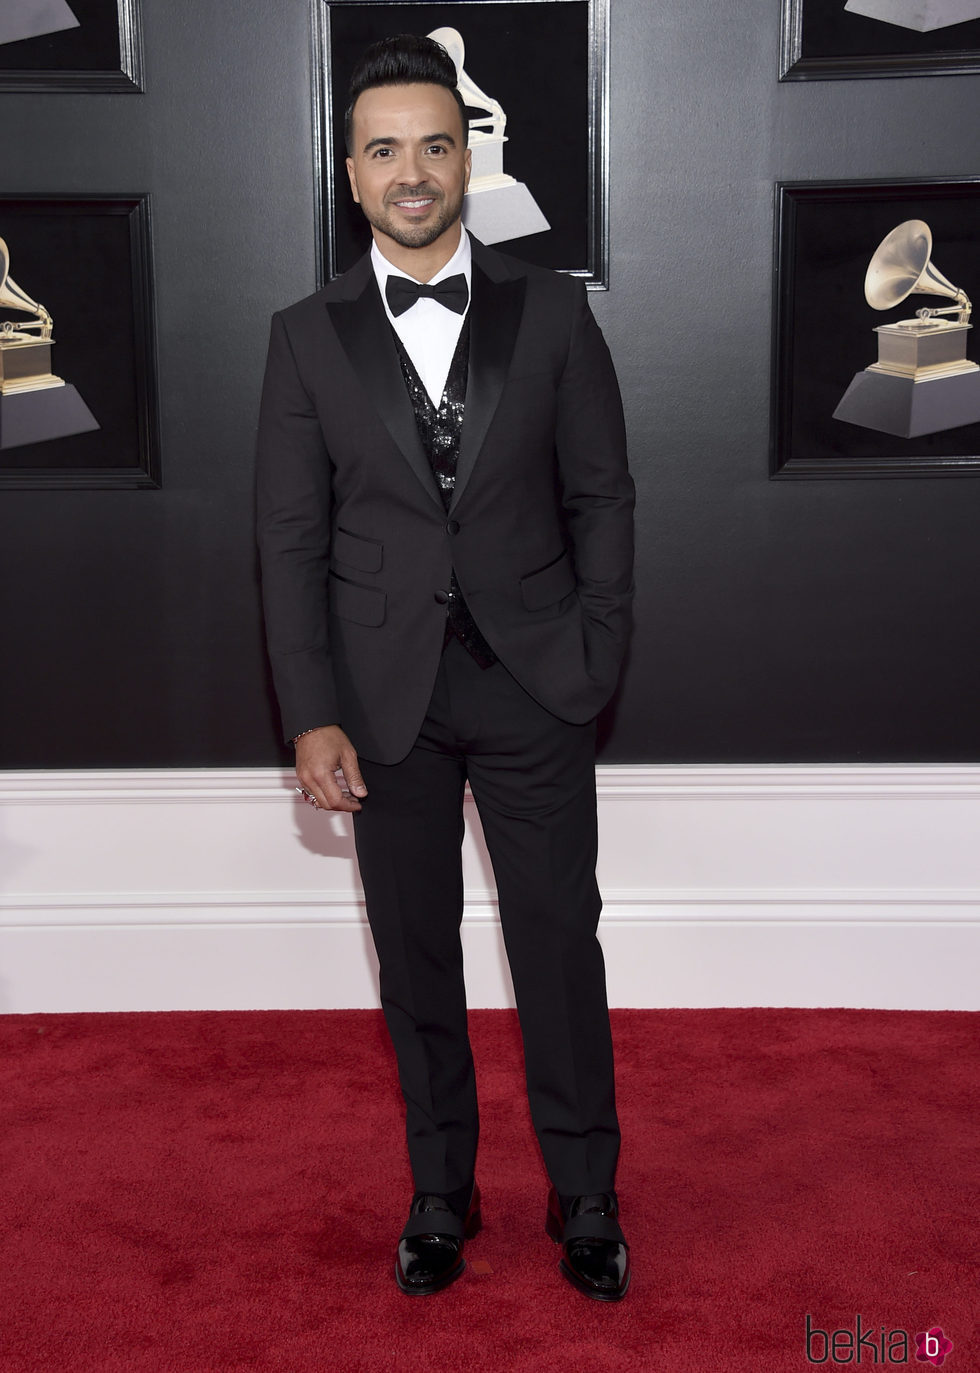 Luis Fonsi en la alfombra roja de los Premios Grammy 2018